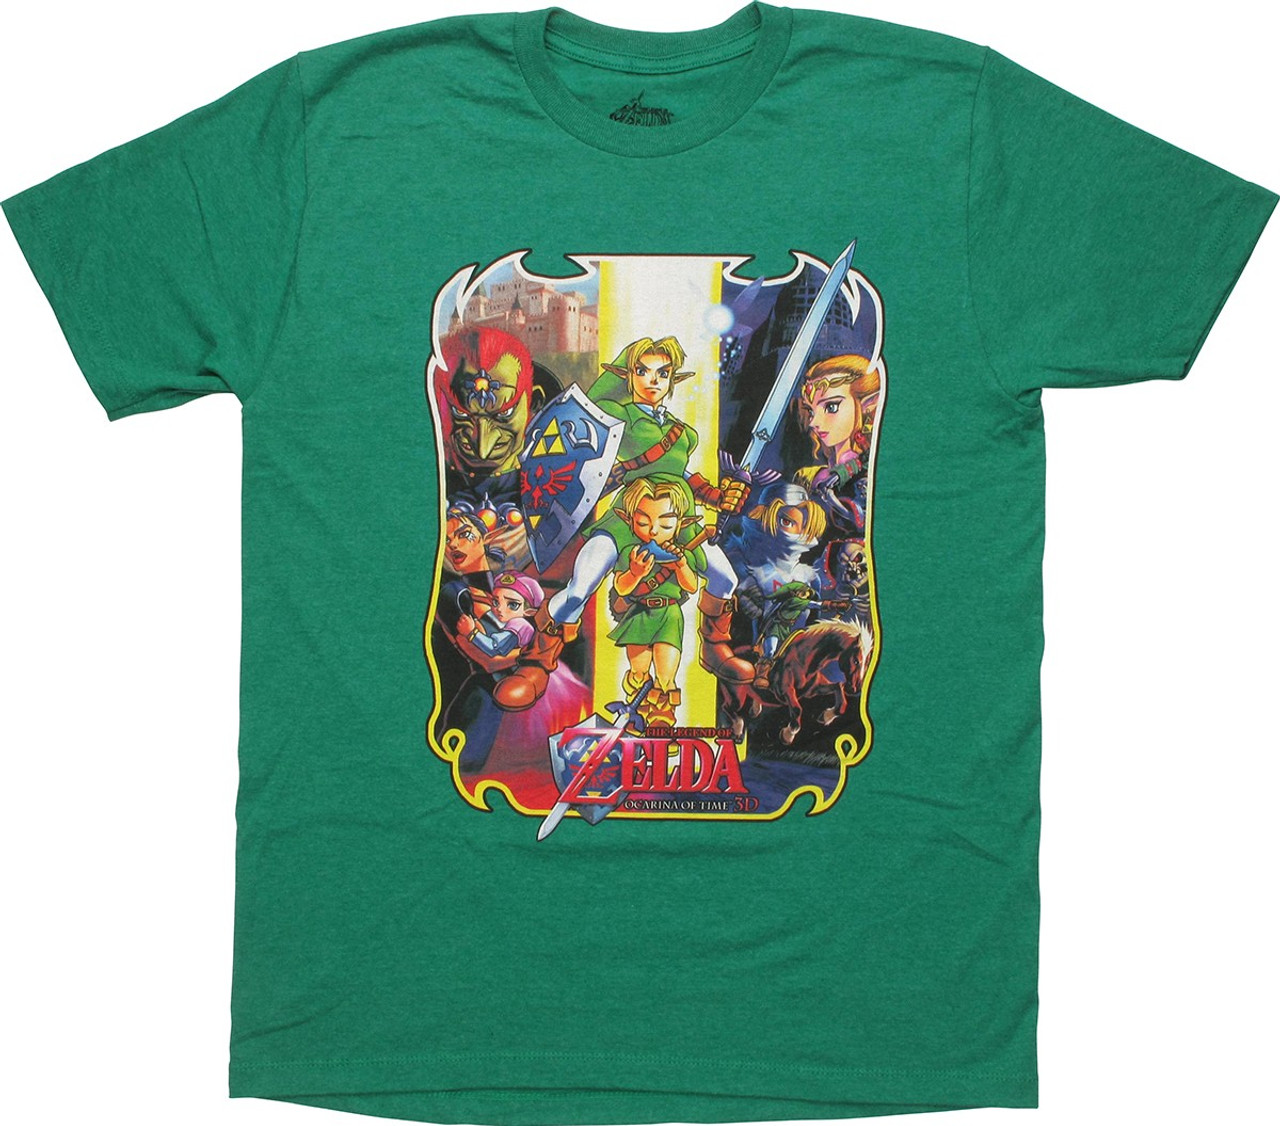 Wonderbaarlijk Barmhartig alarm Zelda Ocarina of Time 3D Characters T-Shirt